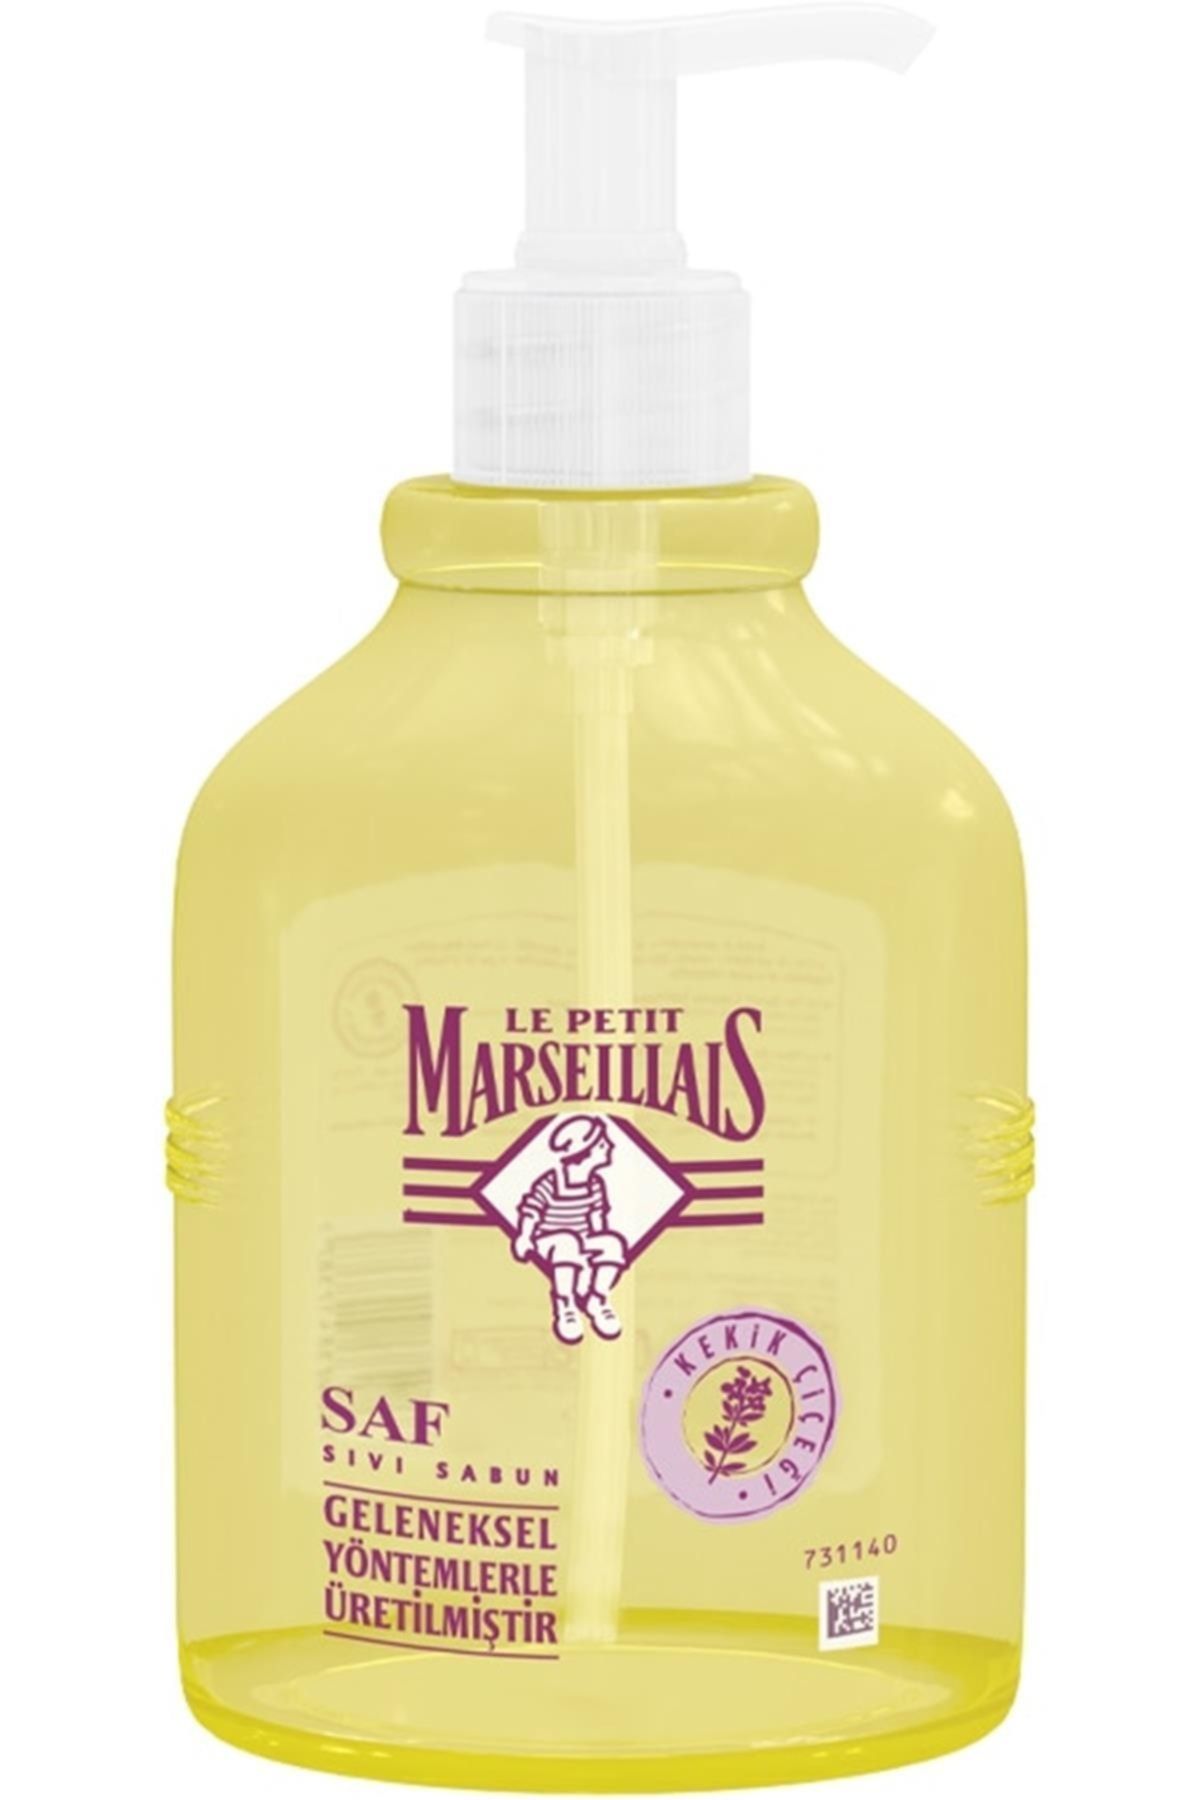 Le Petit Marseillais Marka: Kekik Çiçeği Yağı Sıvı Sabun 500 Ml Kategori: Banyo Sabunu